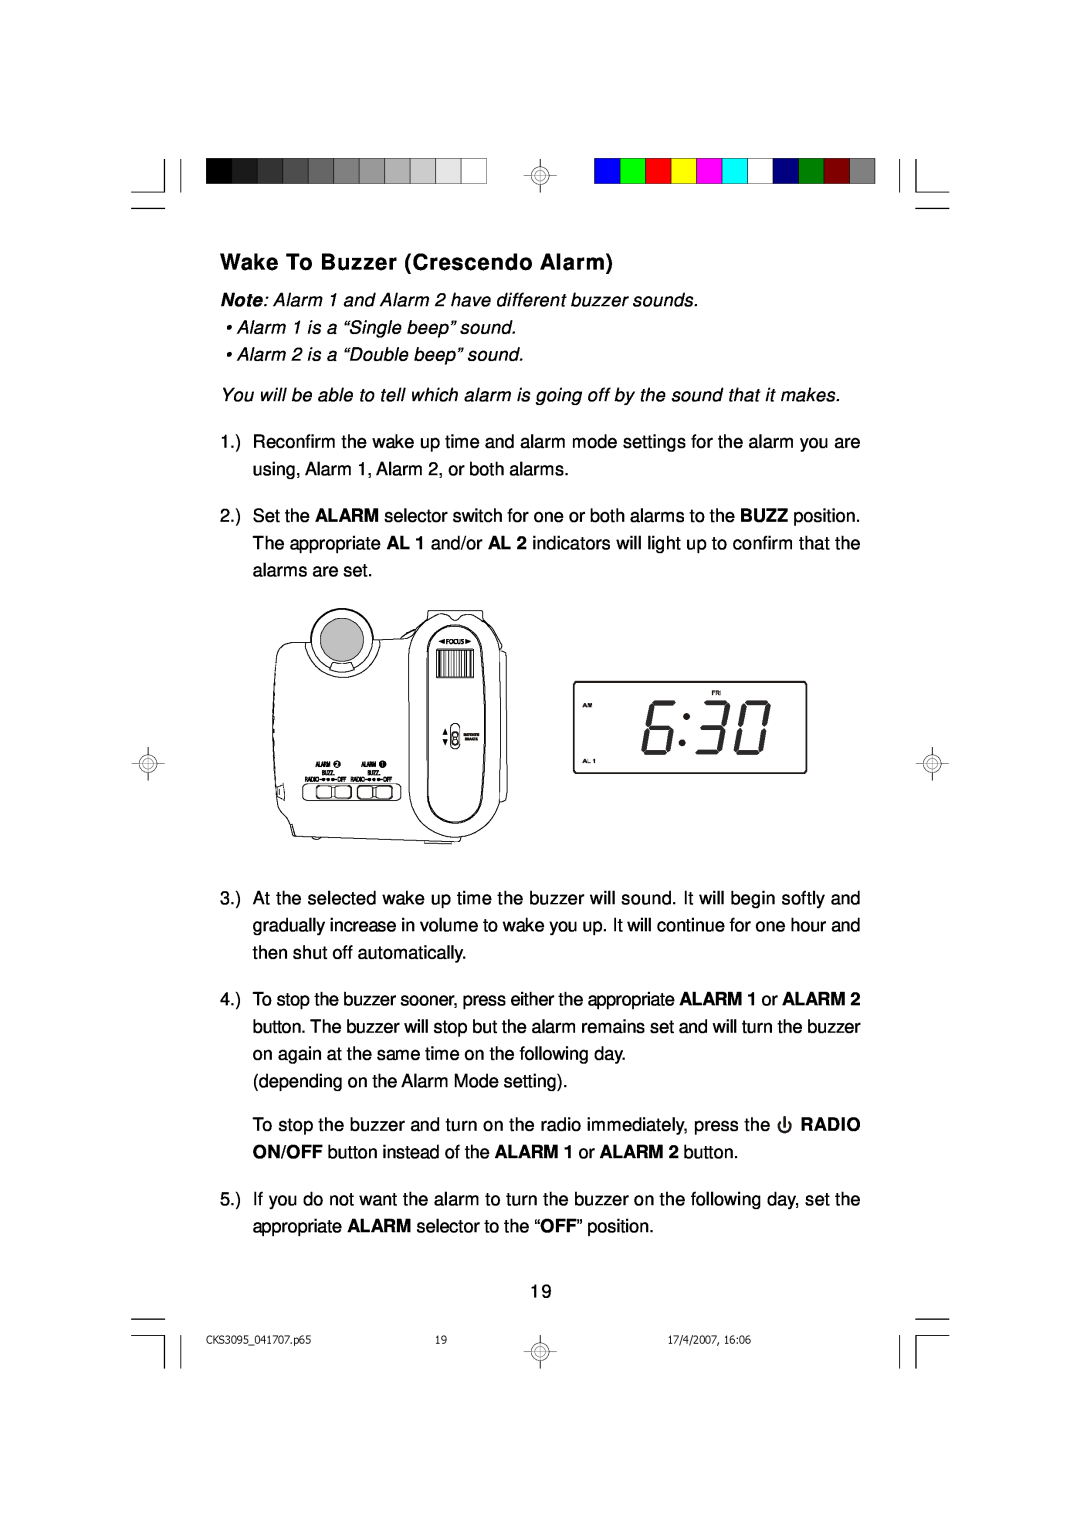 Emerson CKS3095S, CKS3095B Wake To Buzzer Crescendo Alarm, Note Alarm 1 and Alarm 2 have different buzzer sounds 